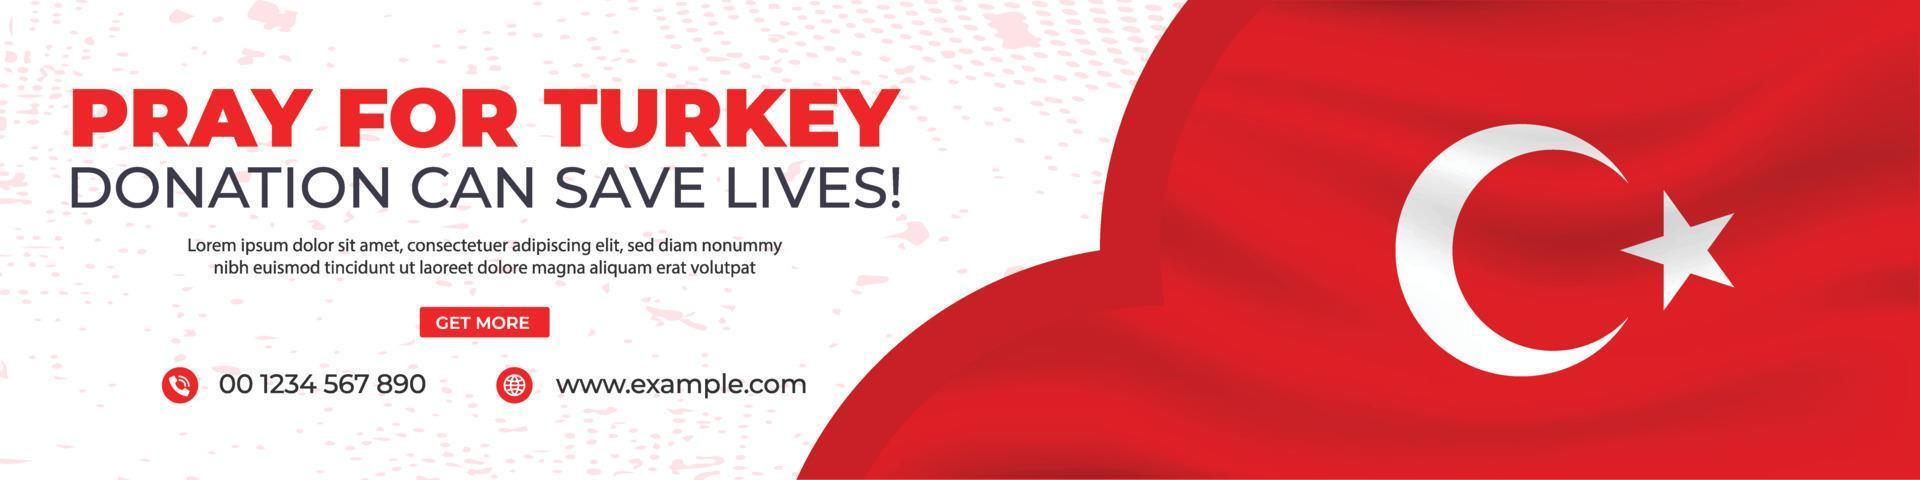 Donation for turkey social media post, Turkey web banner design, banner design for pray for turkey vector